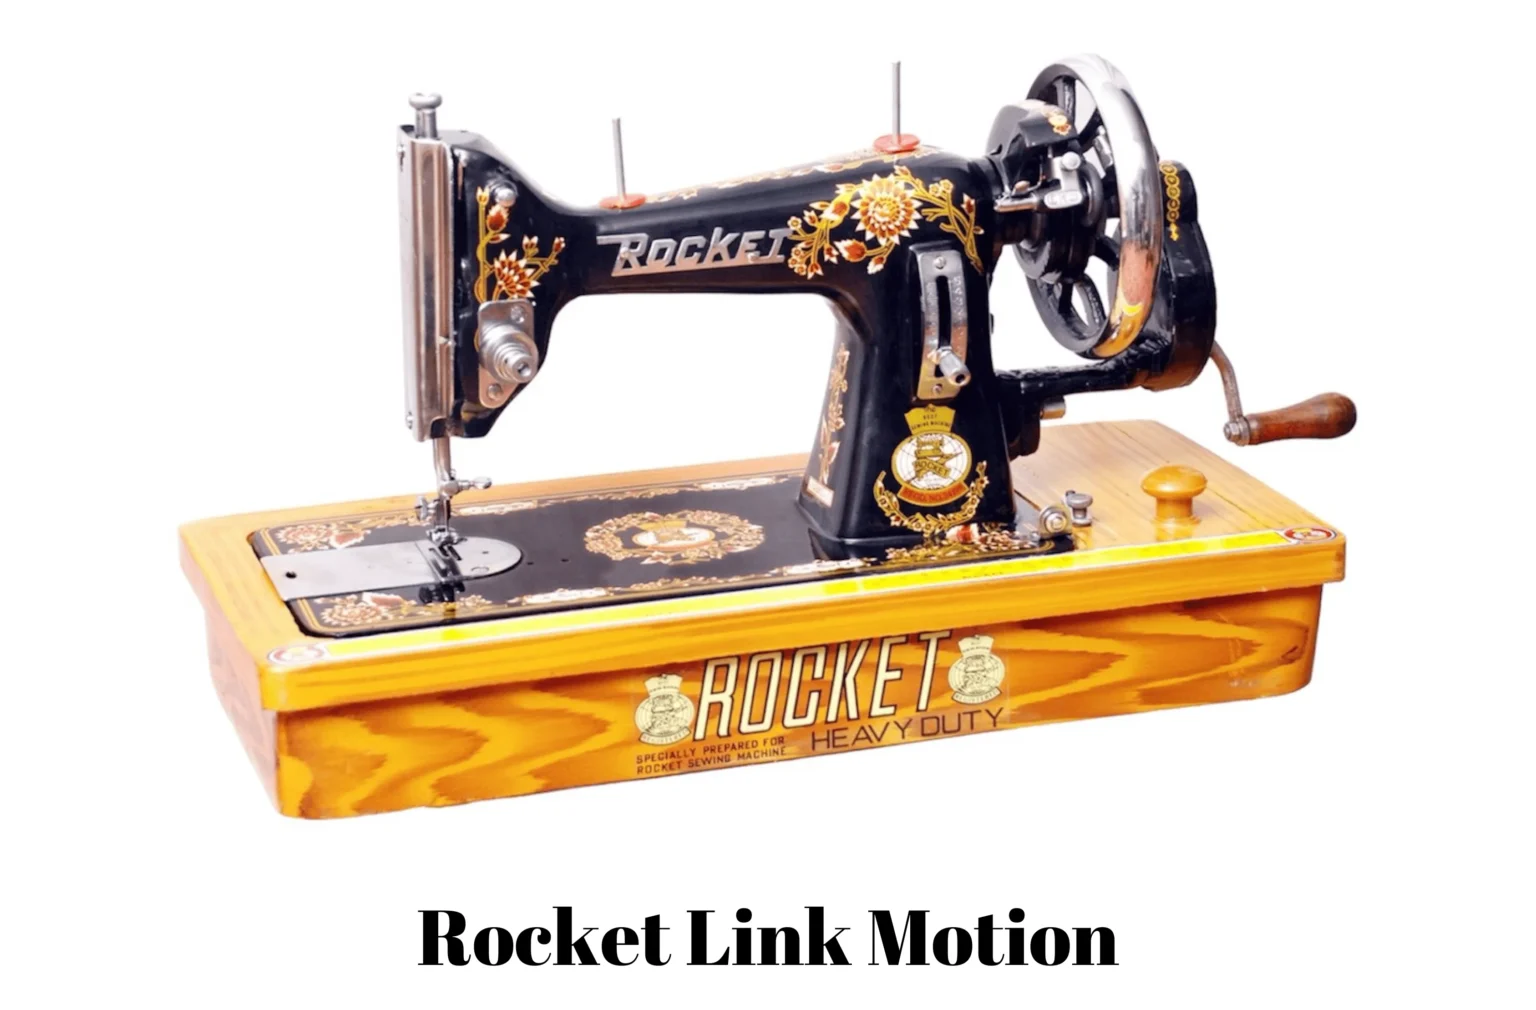 Rocket sewing machine